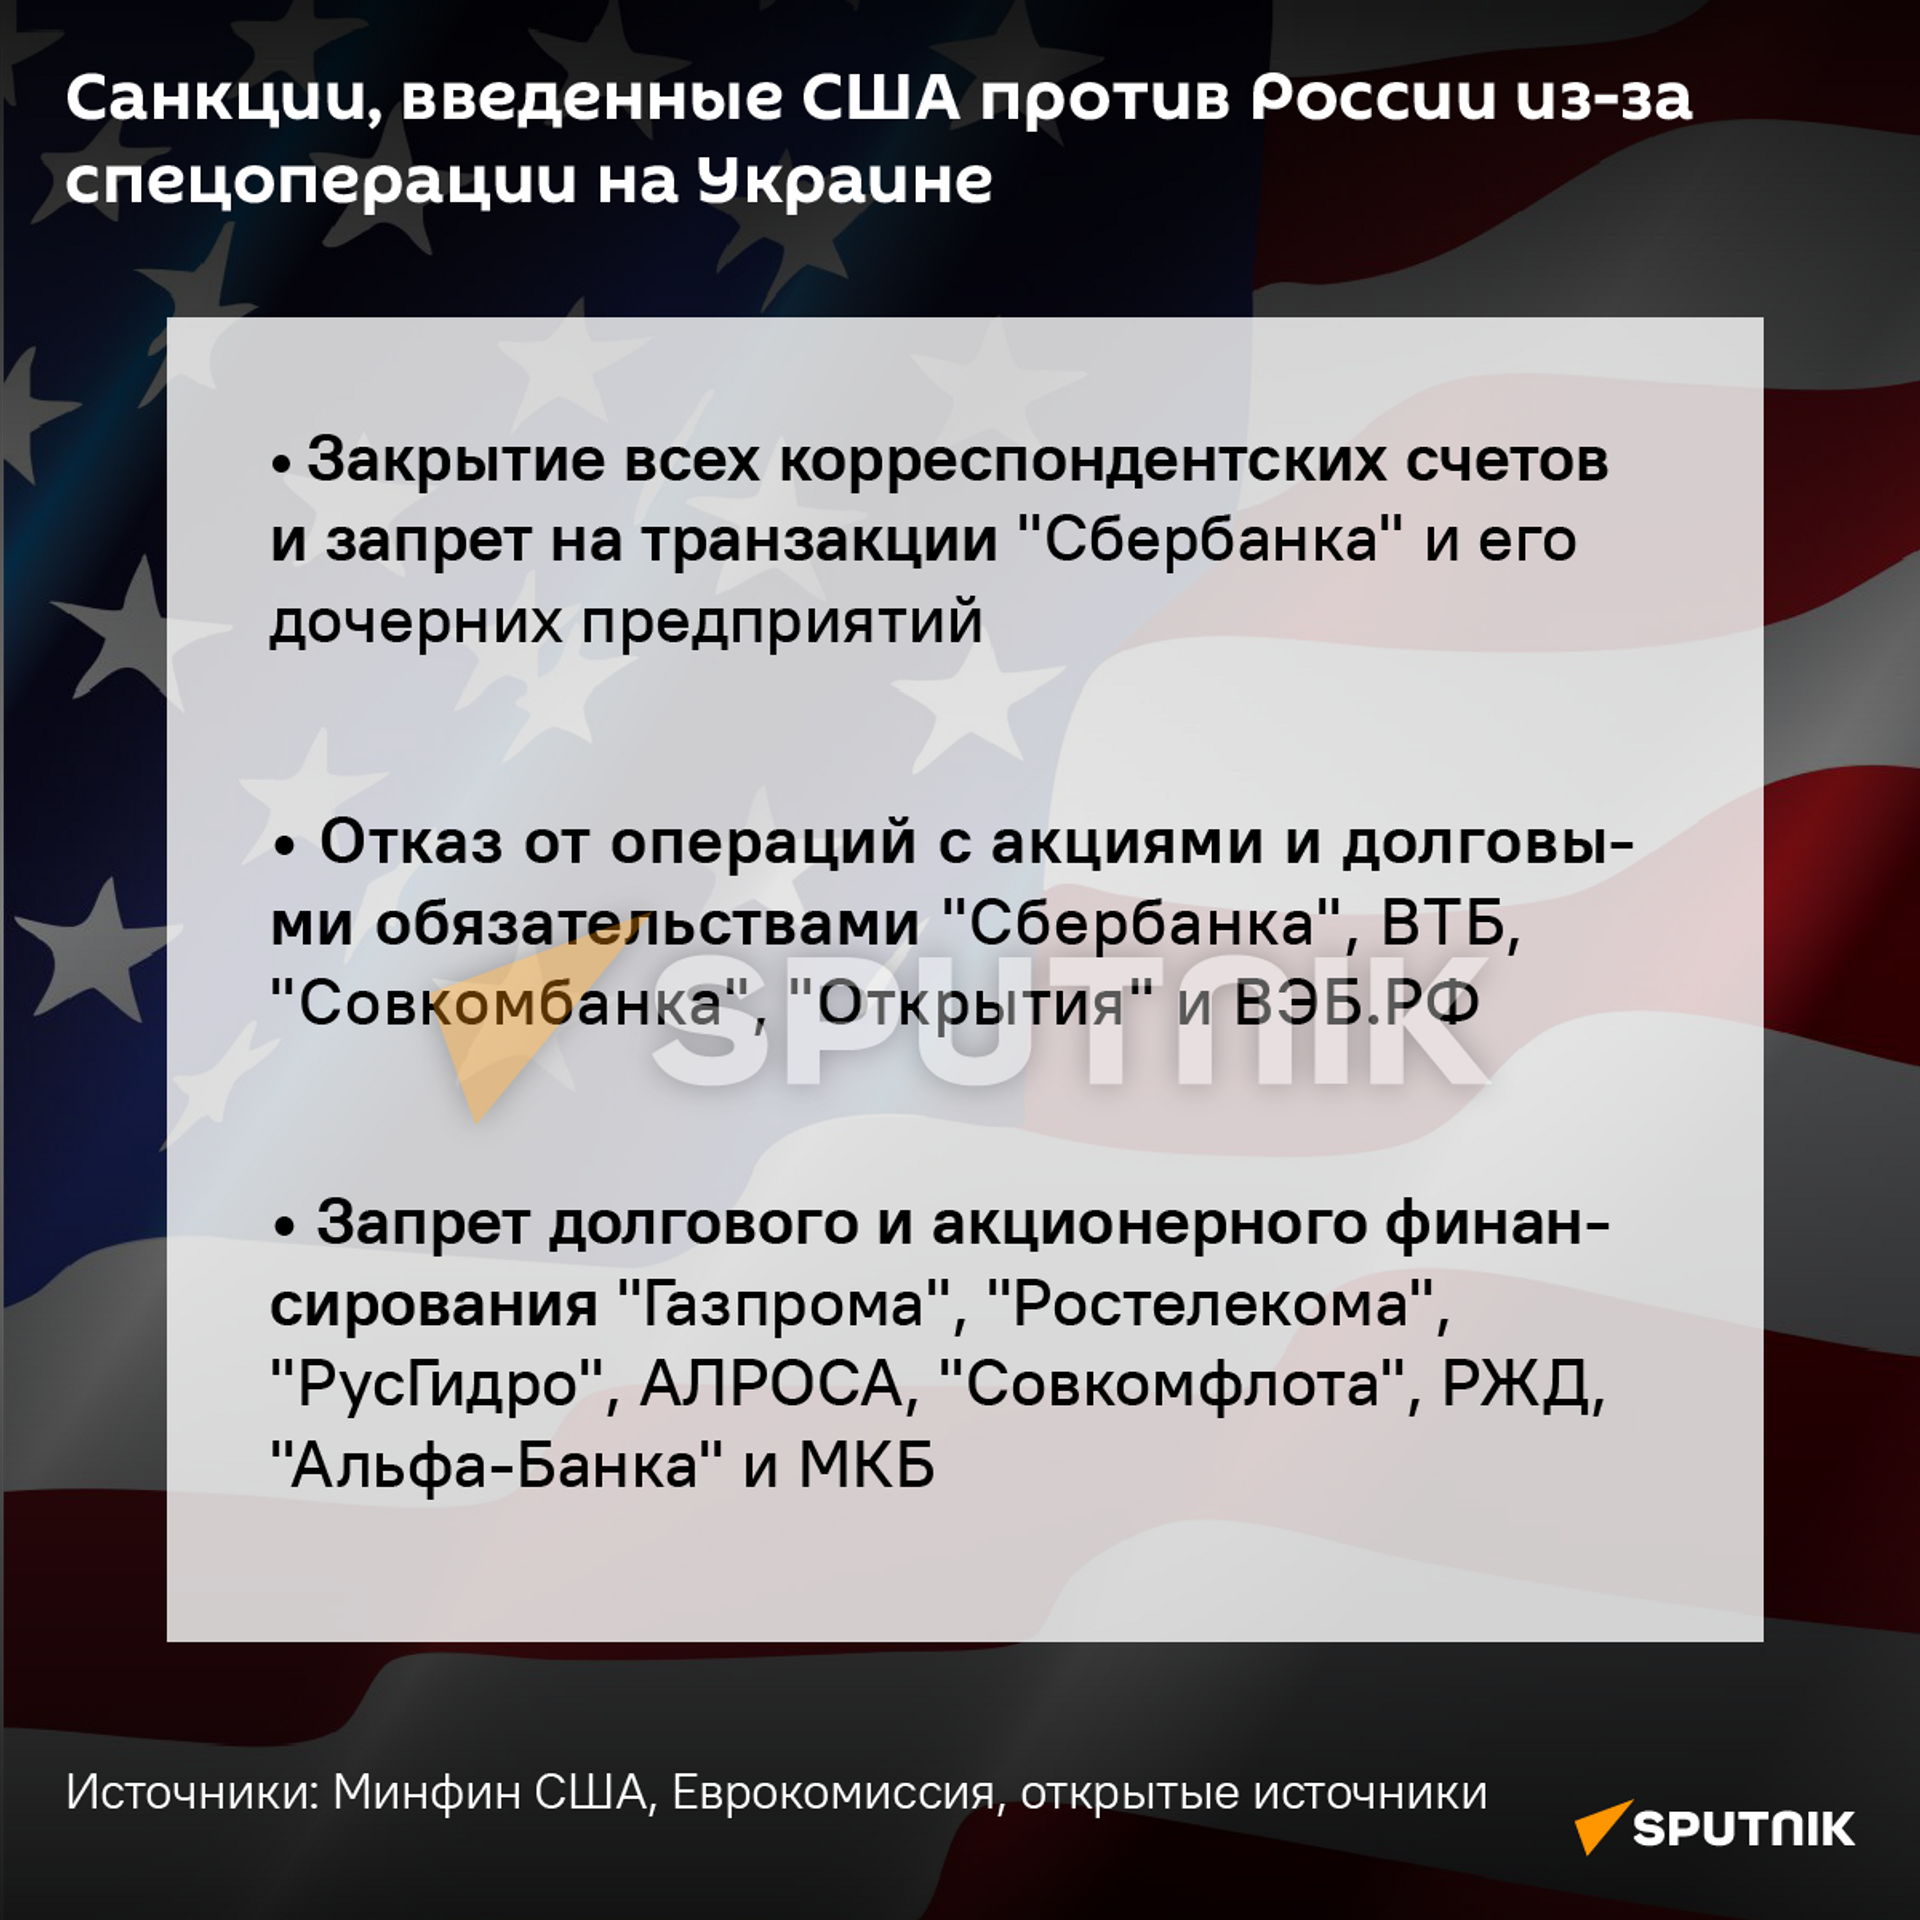 Санкции США, введенные против России - Sputnik Узбекистан, 1920, 26.02.2022